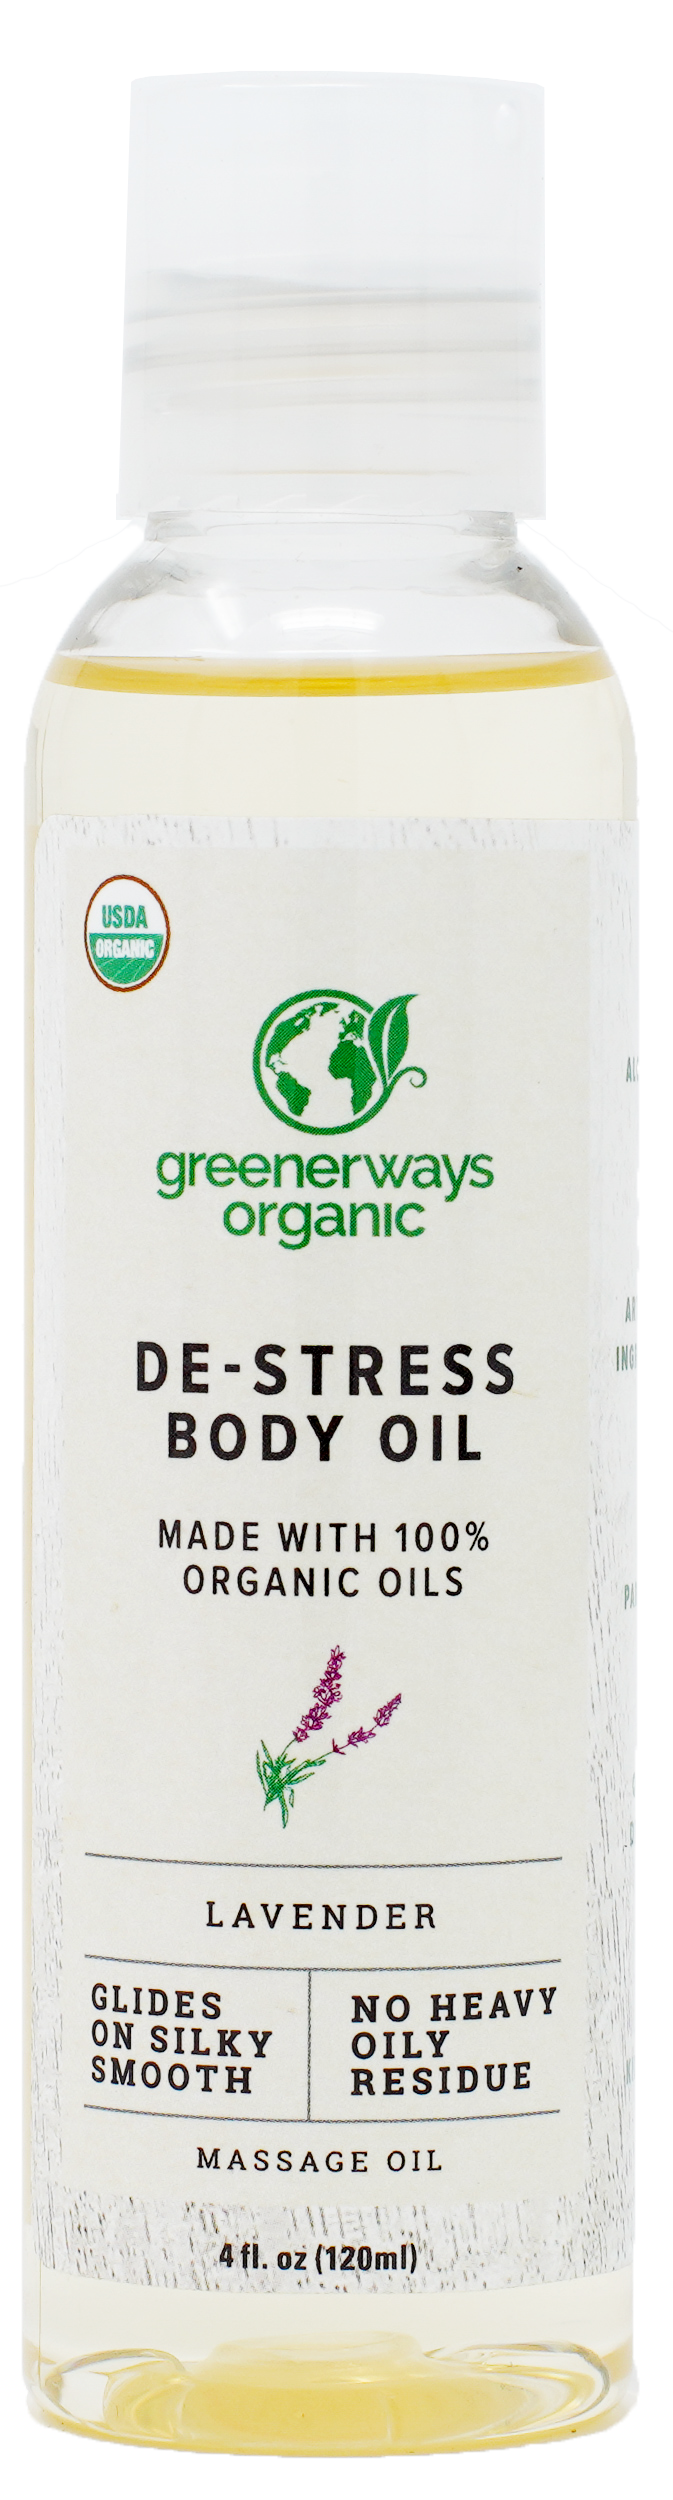 de-stress_body_oil